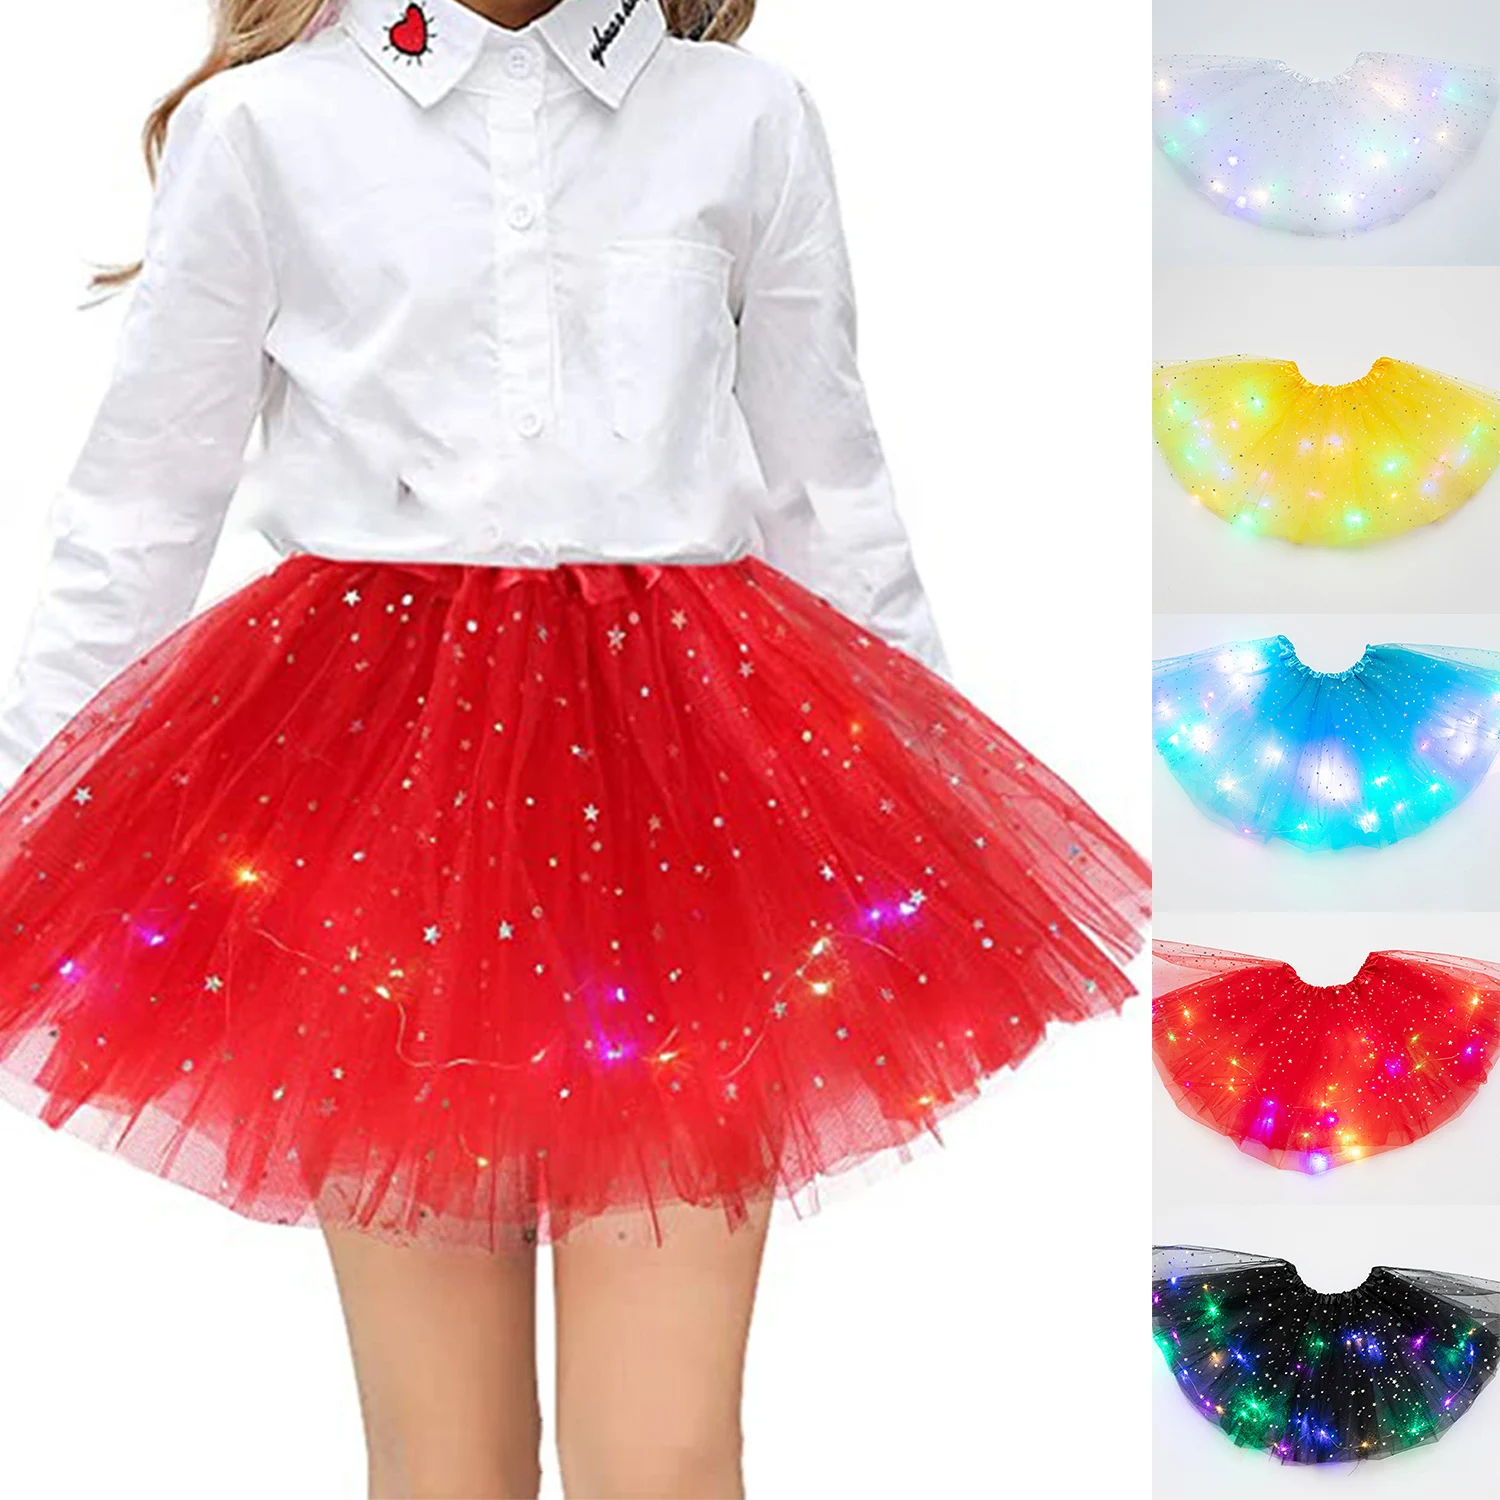 

LED Glowing Light Girls Tulle Star Short Tutu Skirt Children Fancy Ballet Dancewear Tulle Light Up Short Dress Light Up Costume